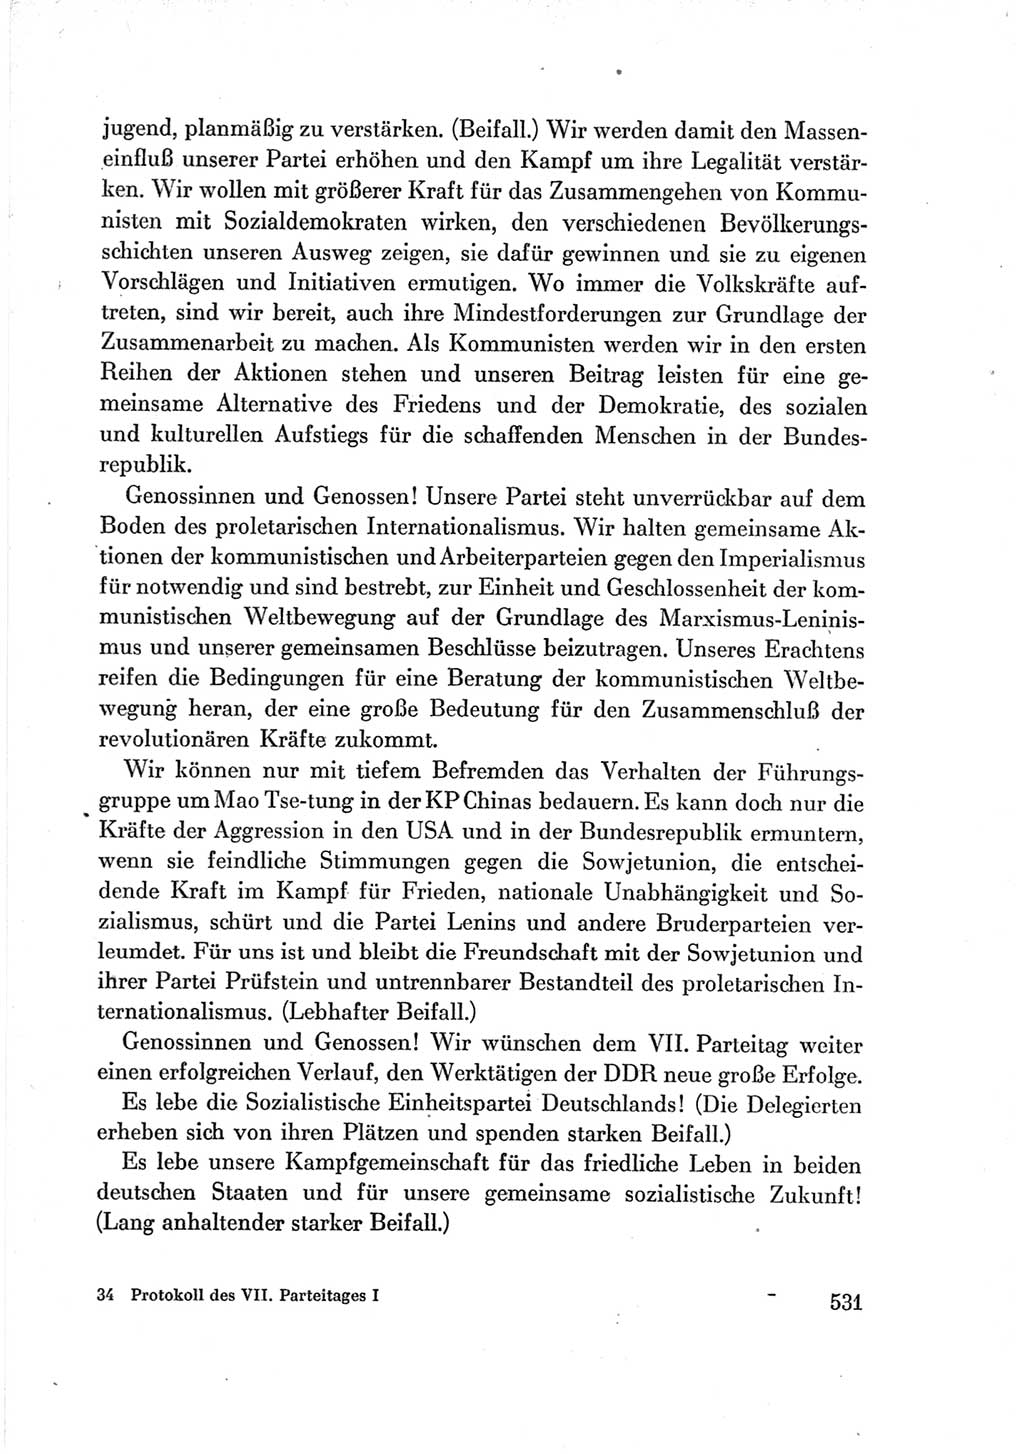 Protokoll der Verhandlungen des Ⅶ. Parteitages der Sozialistischen Einheitspartei Deutschlands (SED) [Deutsche Demokratische Republik (DDR)] 1967, Band Ⅰ, Seite 531 (Prot. Verh. Ⅶ. PT SED DDR 1967, Bd. Ⅰ, S. 531)